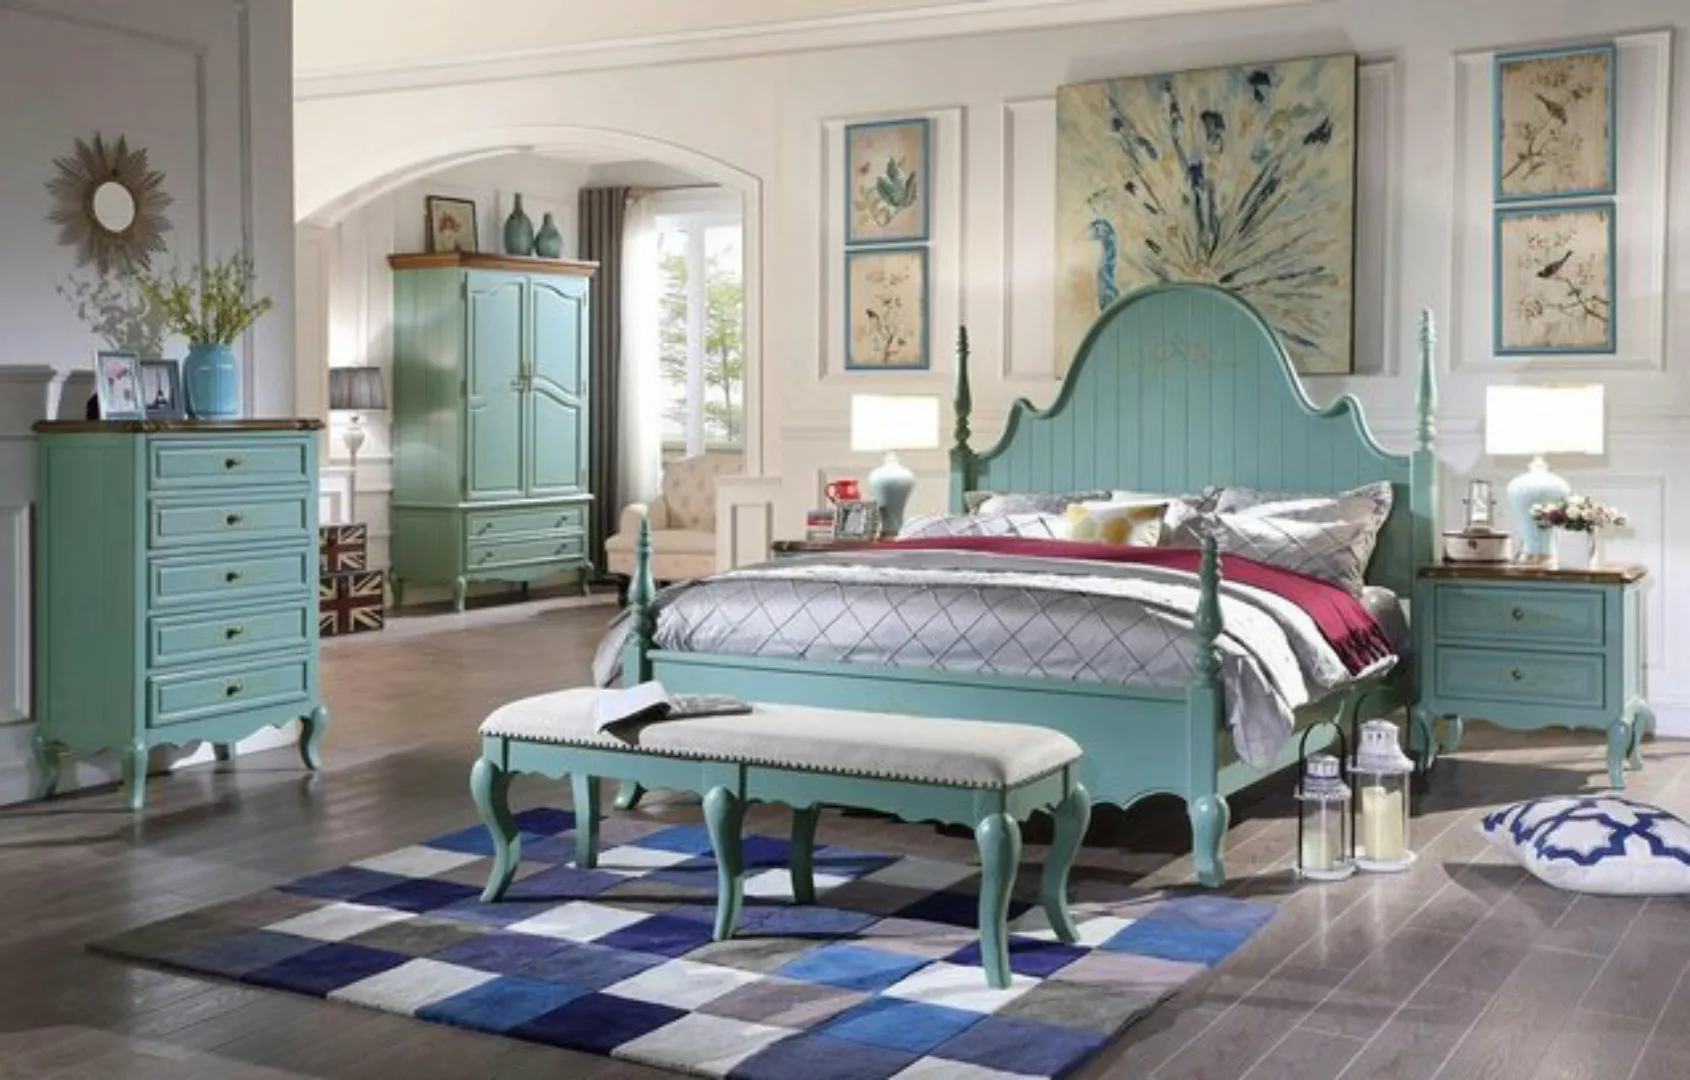 JVmoebel Bett, Luxus Schlafzimmer Bett Echtes Holz Möbel Holz Betten landha günstig online kaufen